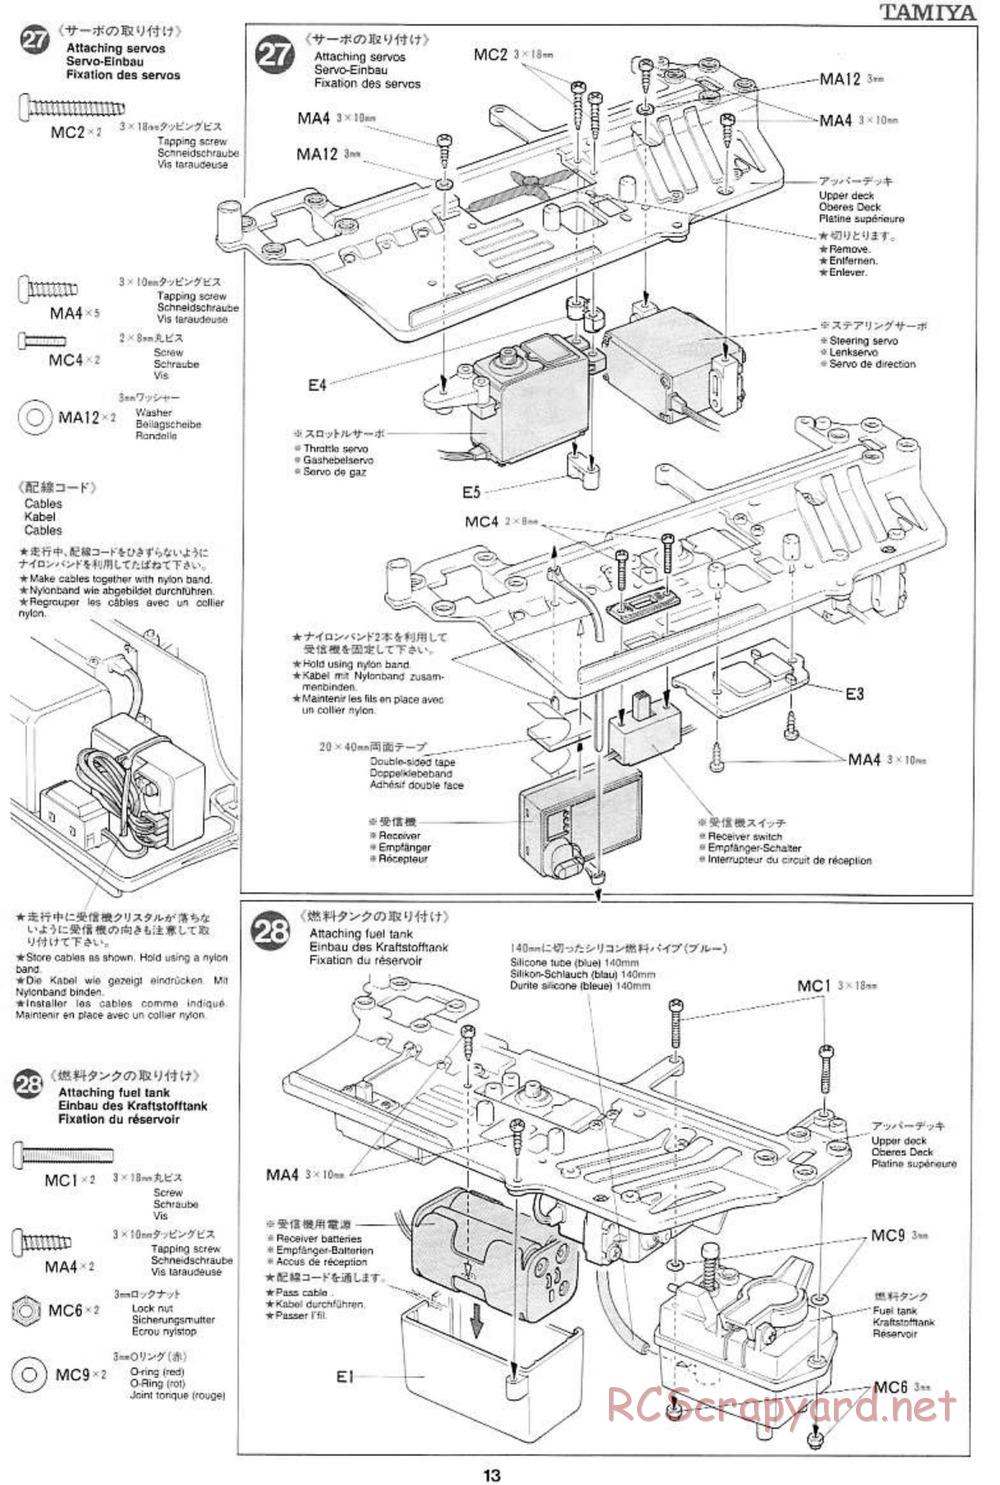 Tamiya - Mercedes CLK GTR Team Sportswear - TG10 Mk.1 Chassis - Manual - Page 13